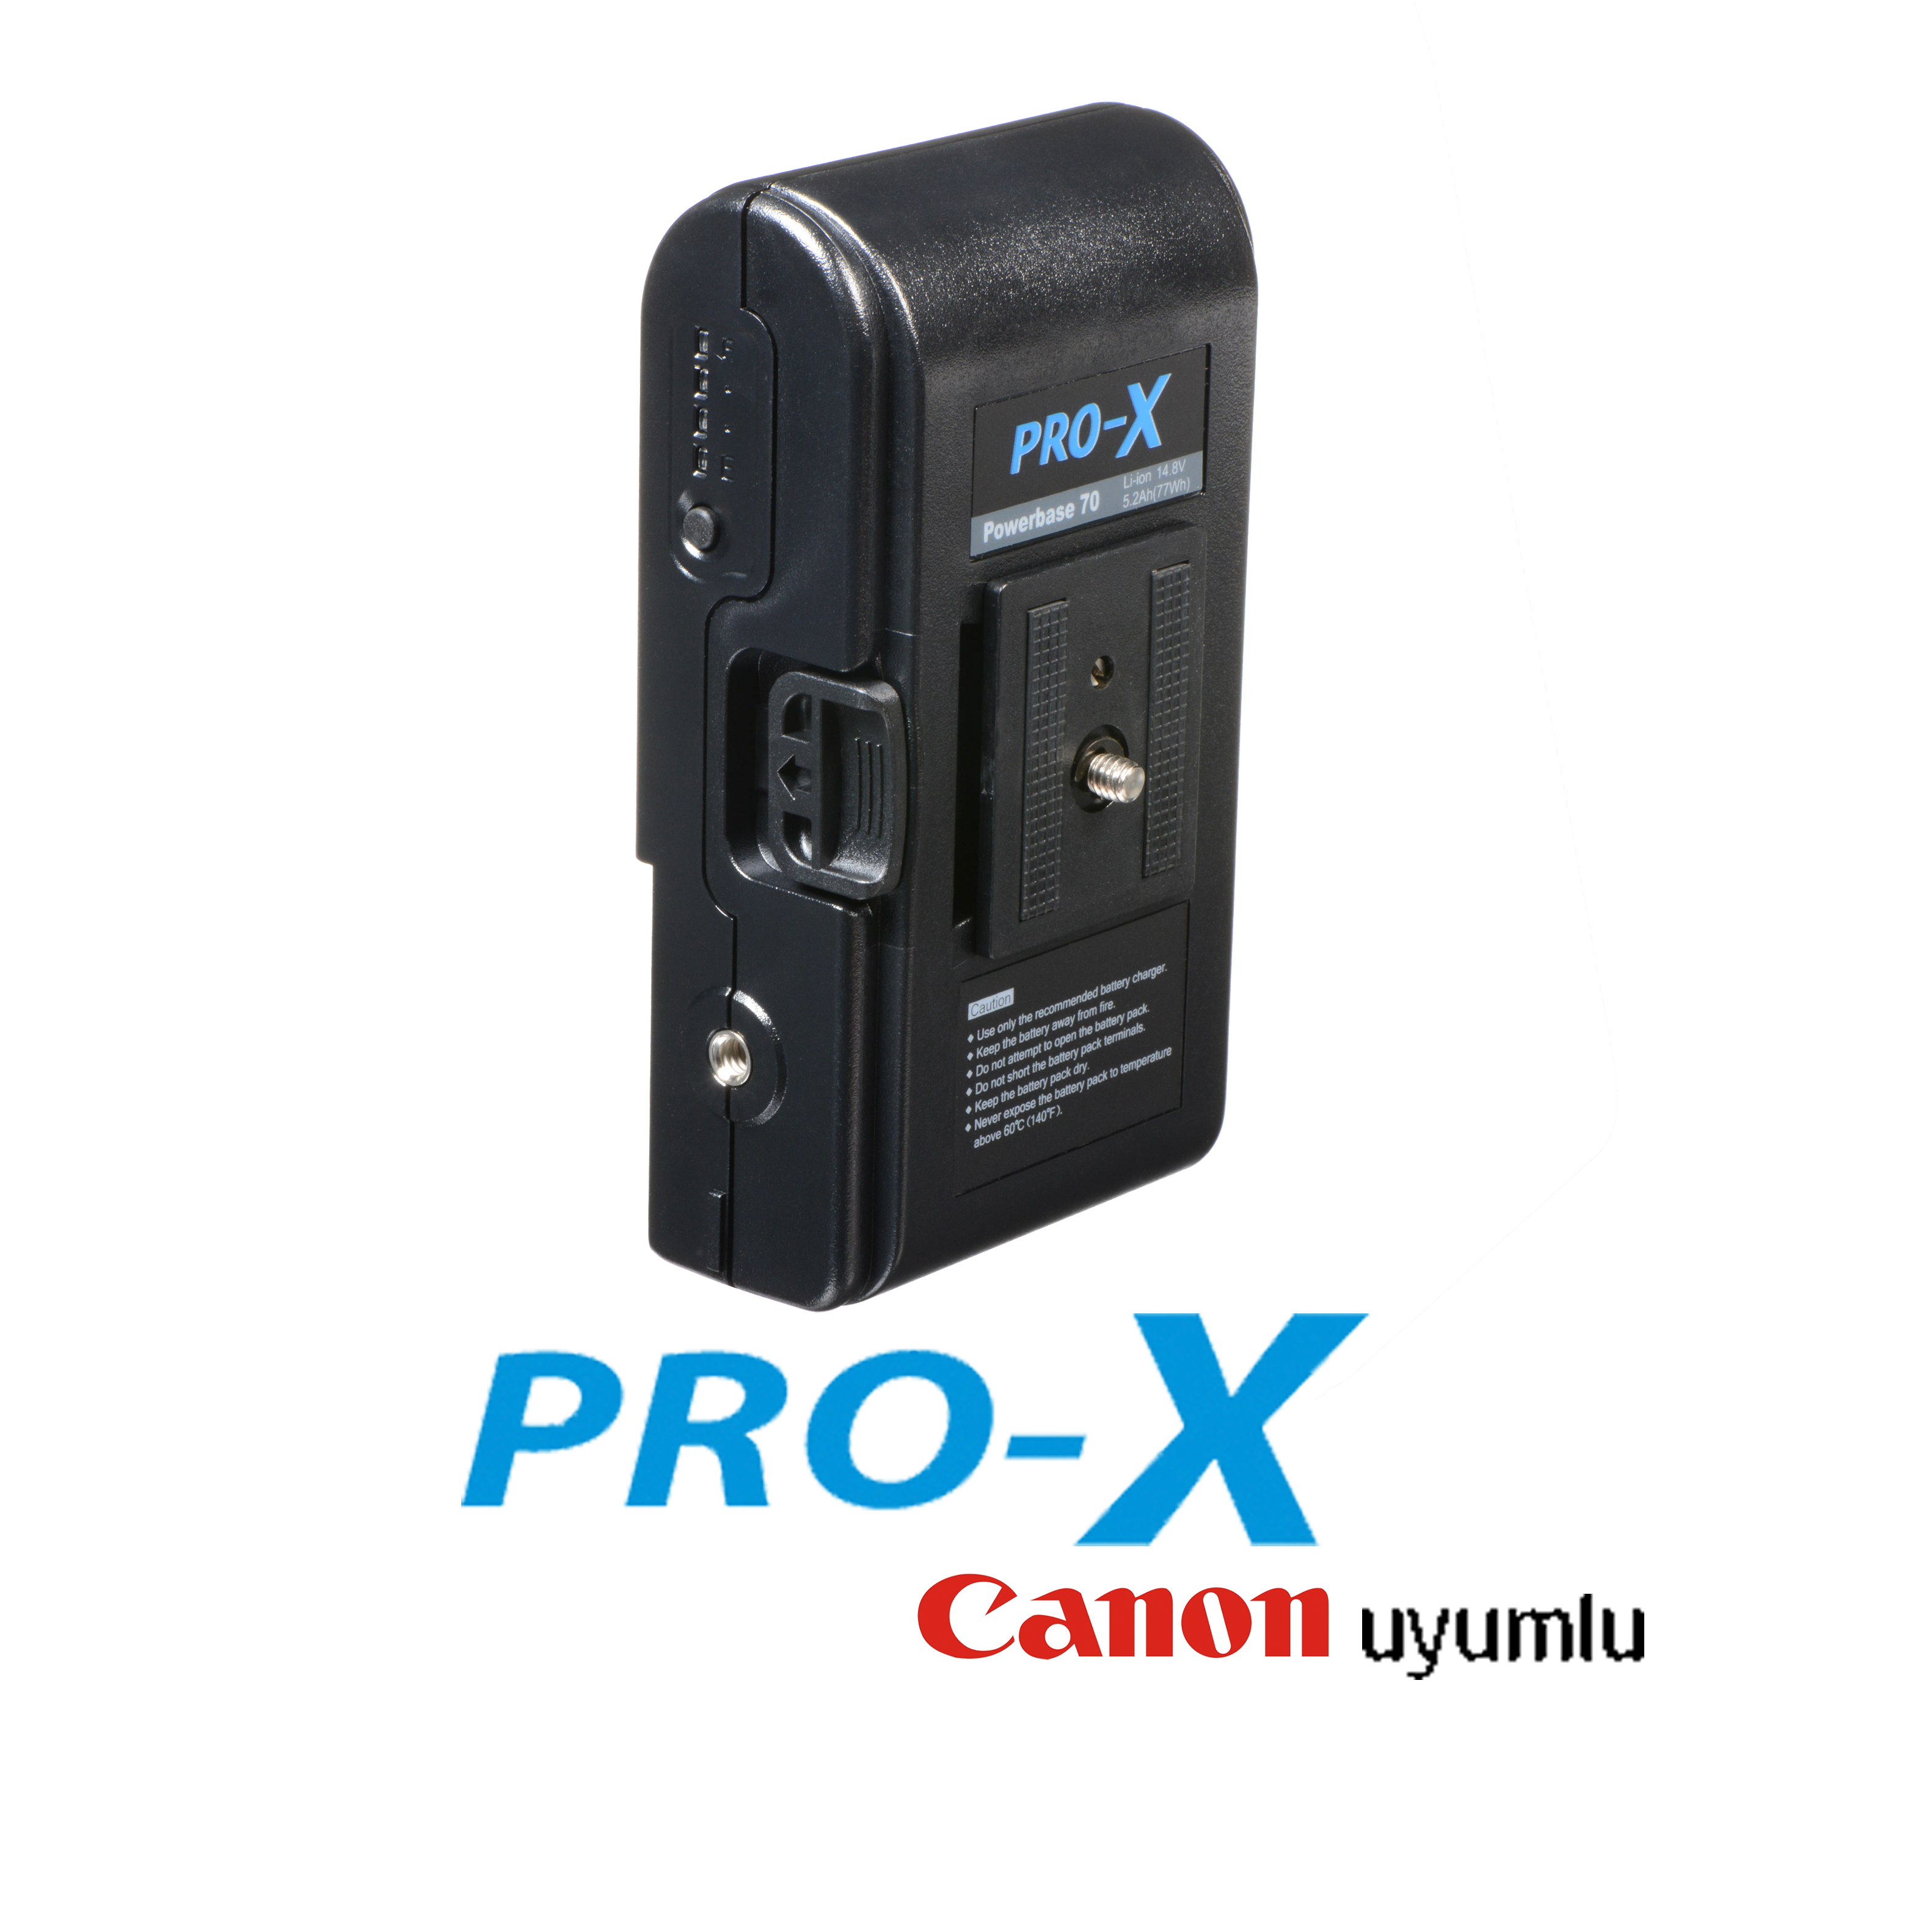 Pro-X Powerbase 70